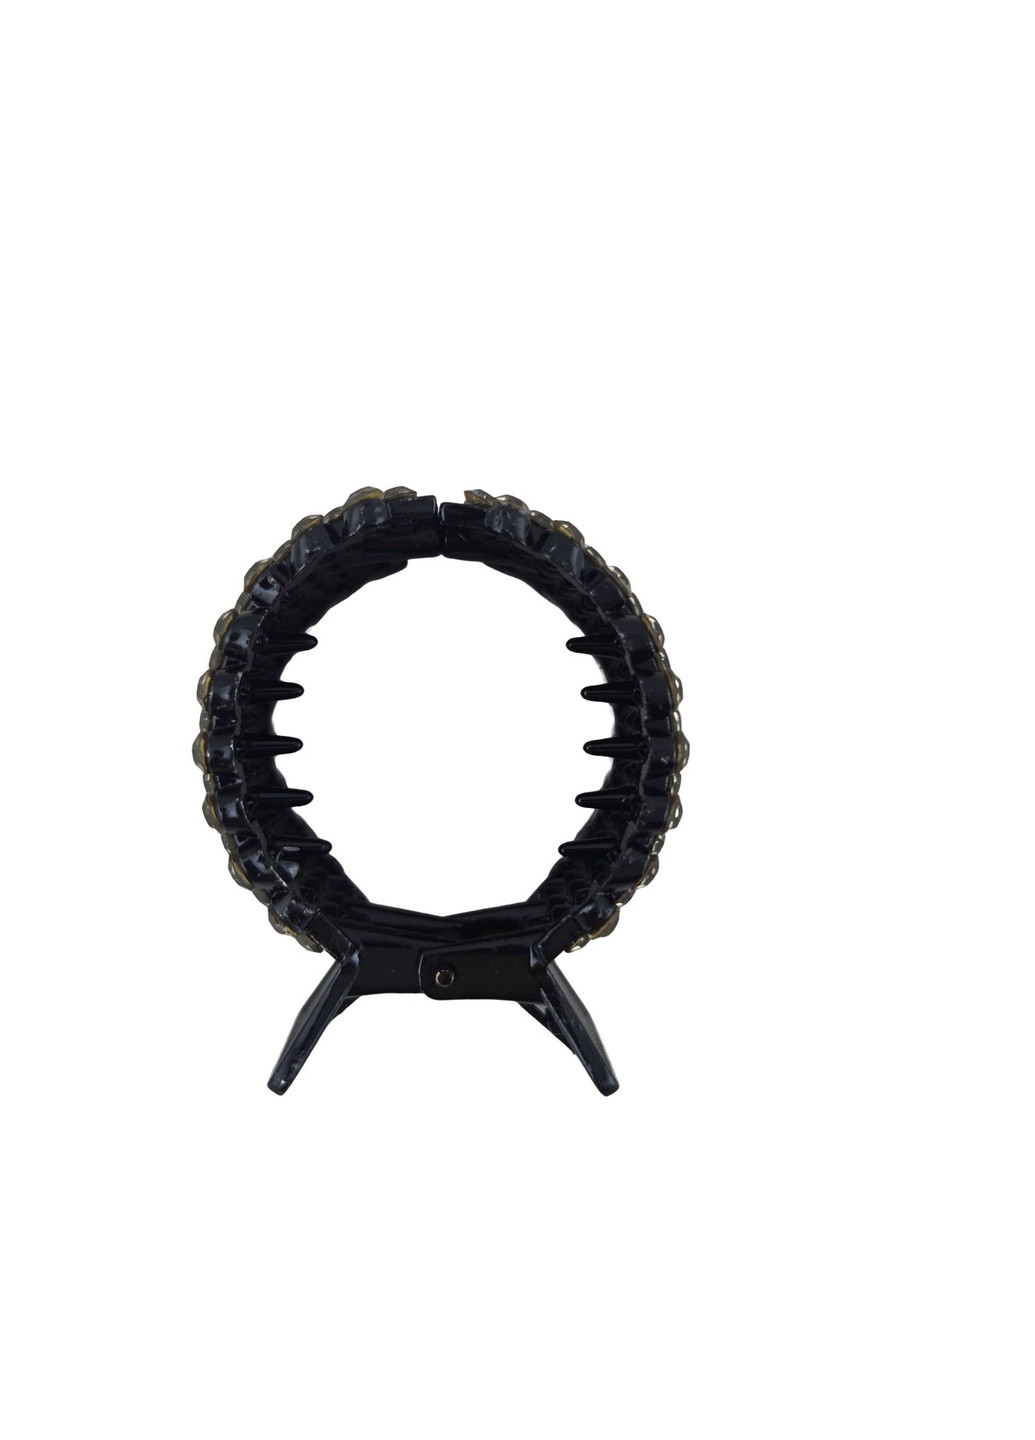 Заколка - краб для волос Кольцо со стразами Чёрный пластик, диаметр 3,5см (138701-1) No Brand (259036540)